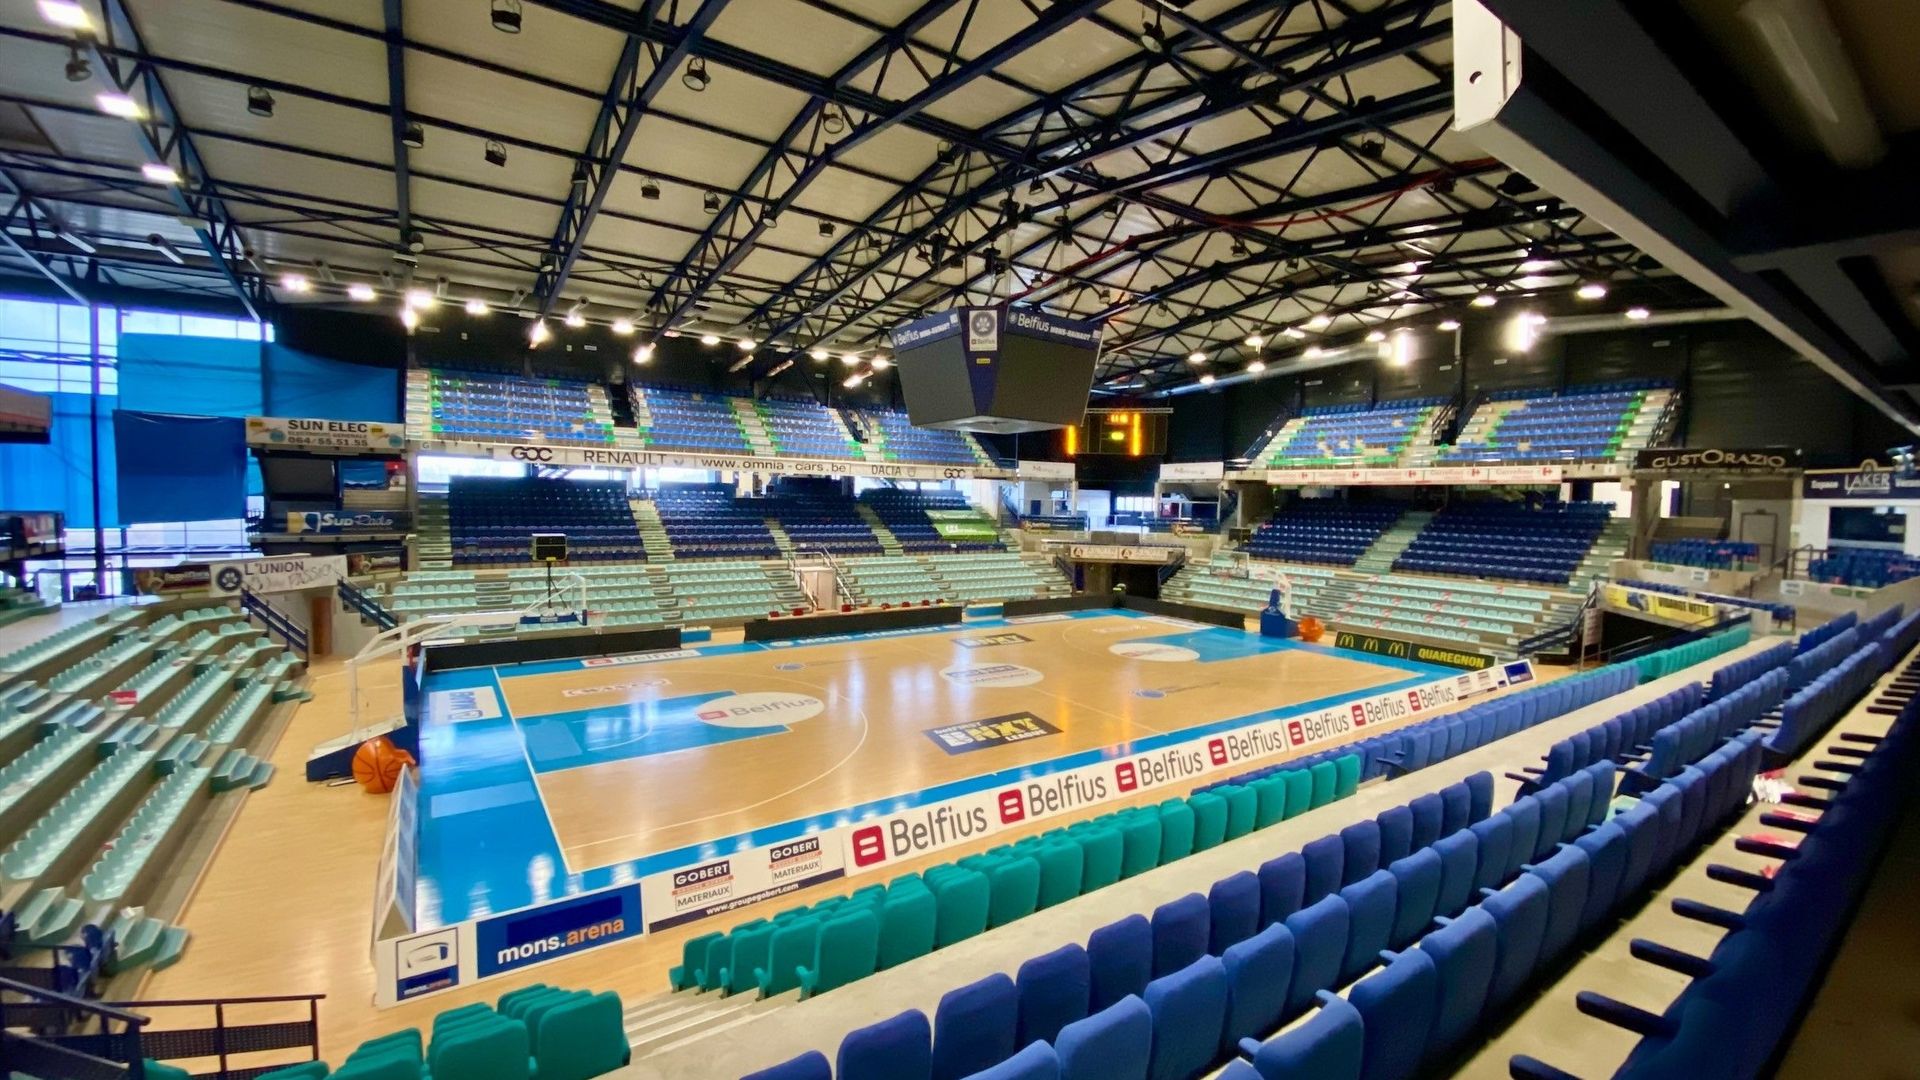 La superbe Mons-Arena (3250 places assises) peut-elle devenir le Stade Roi Baudouin des Belgian Lions, les Diables Rouges du basket? C'est en tout la volonté clairement affichée par le club de Mons-Hainaut et l'AWBB.